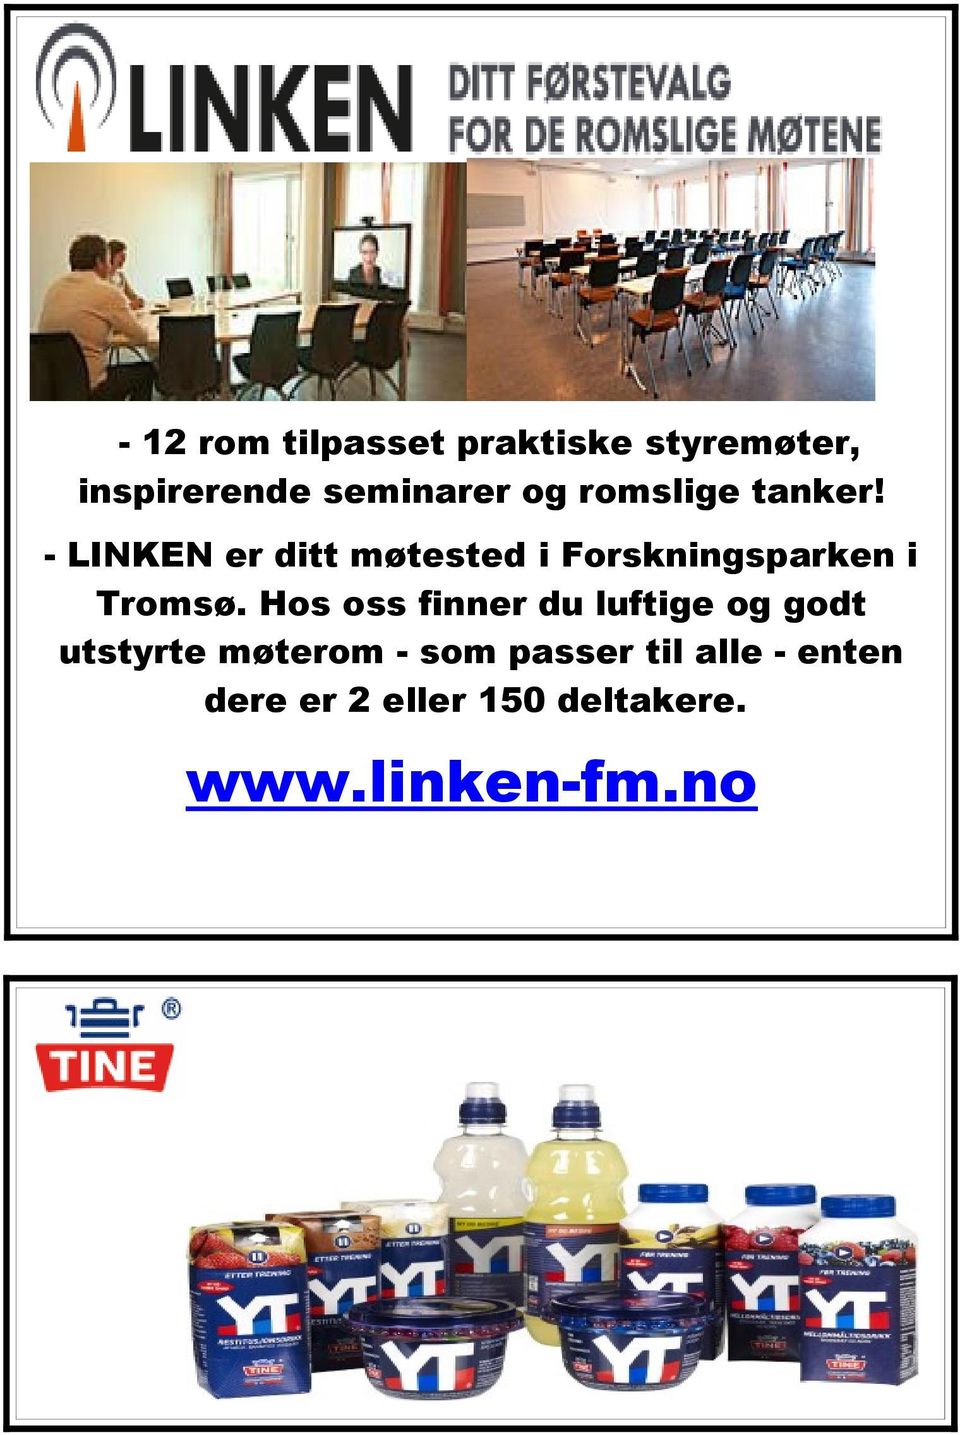 - LINKEN er ditt møtested i Forskningsparken i Tromsø.